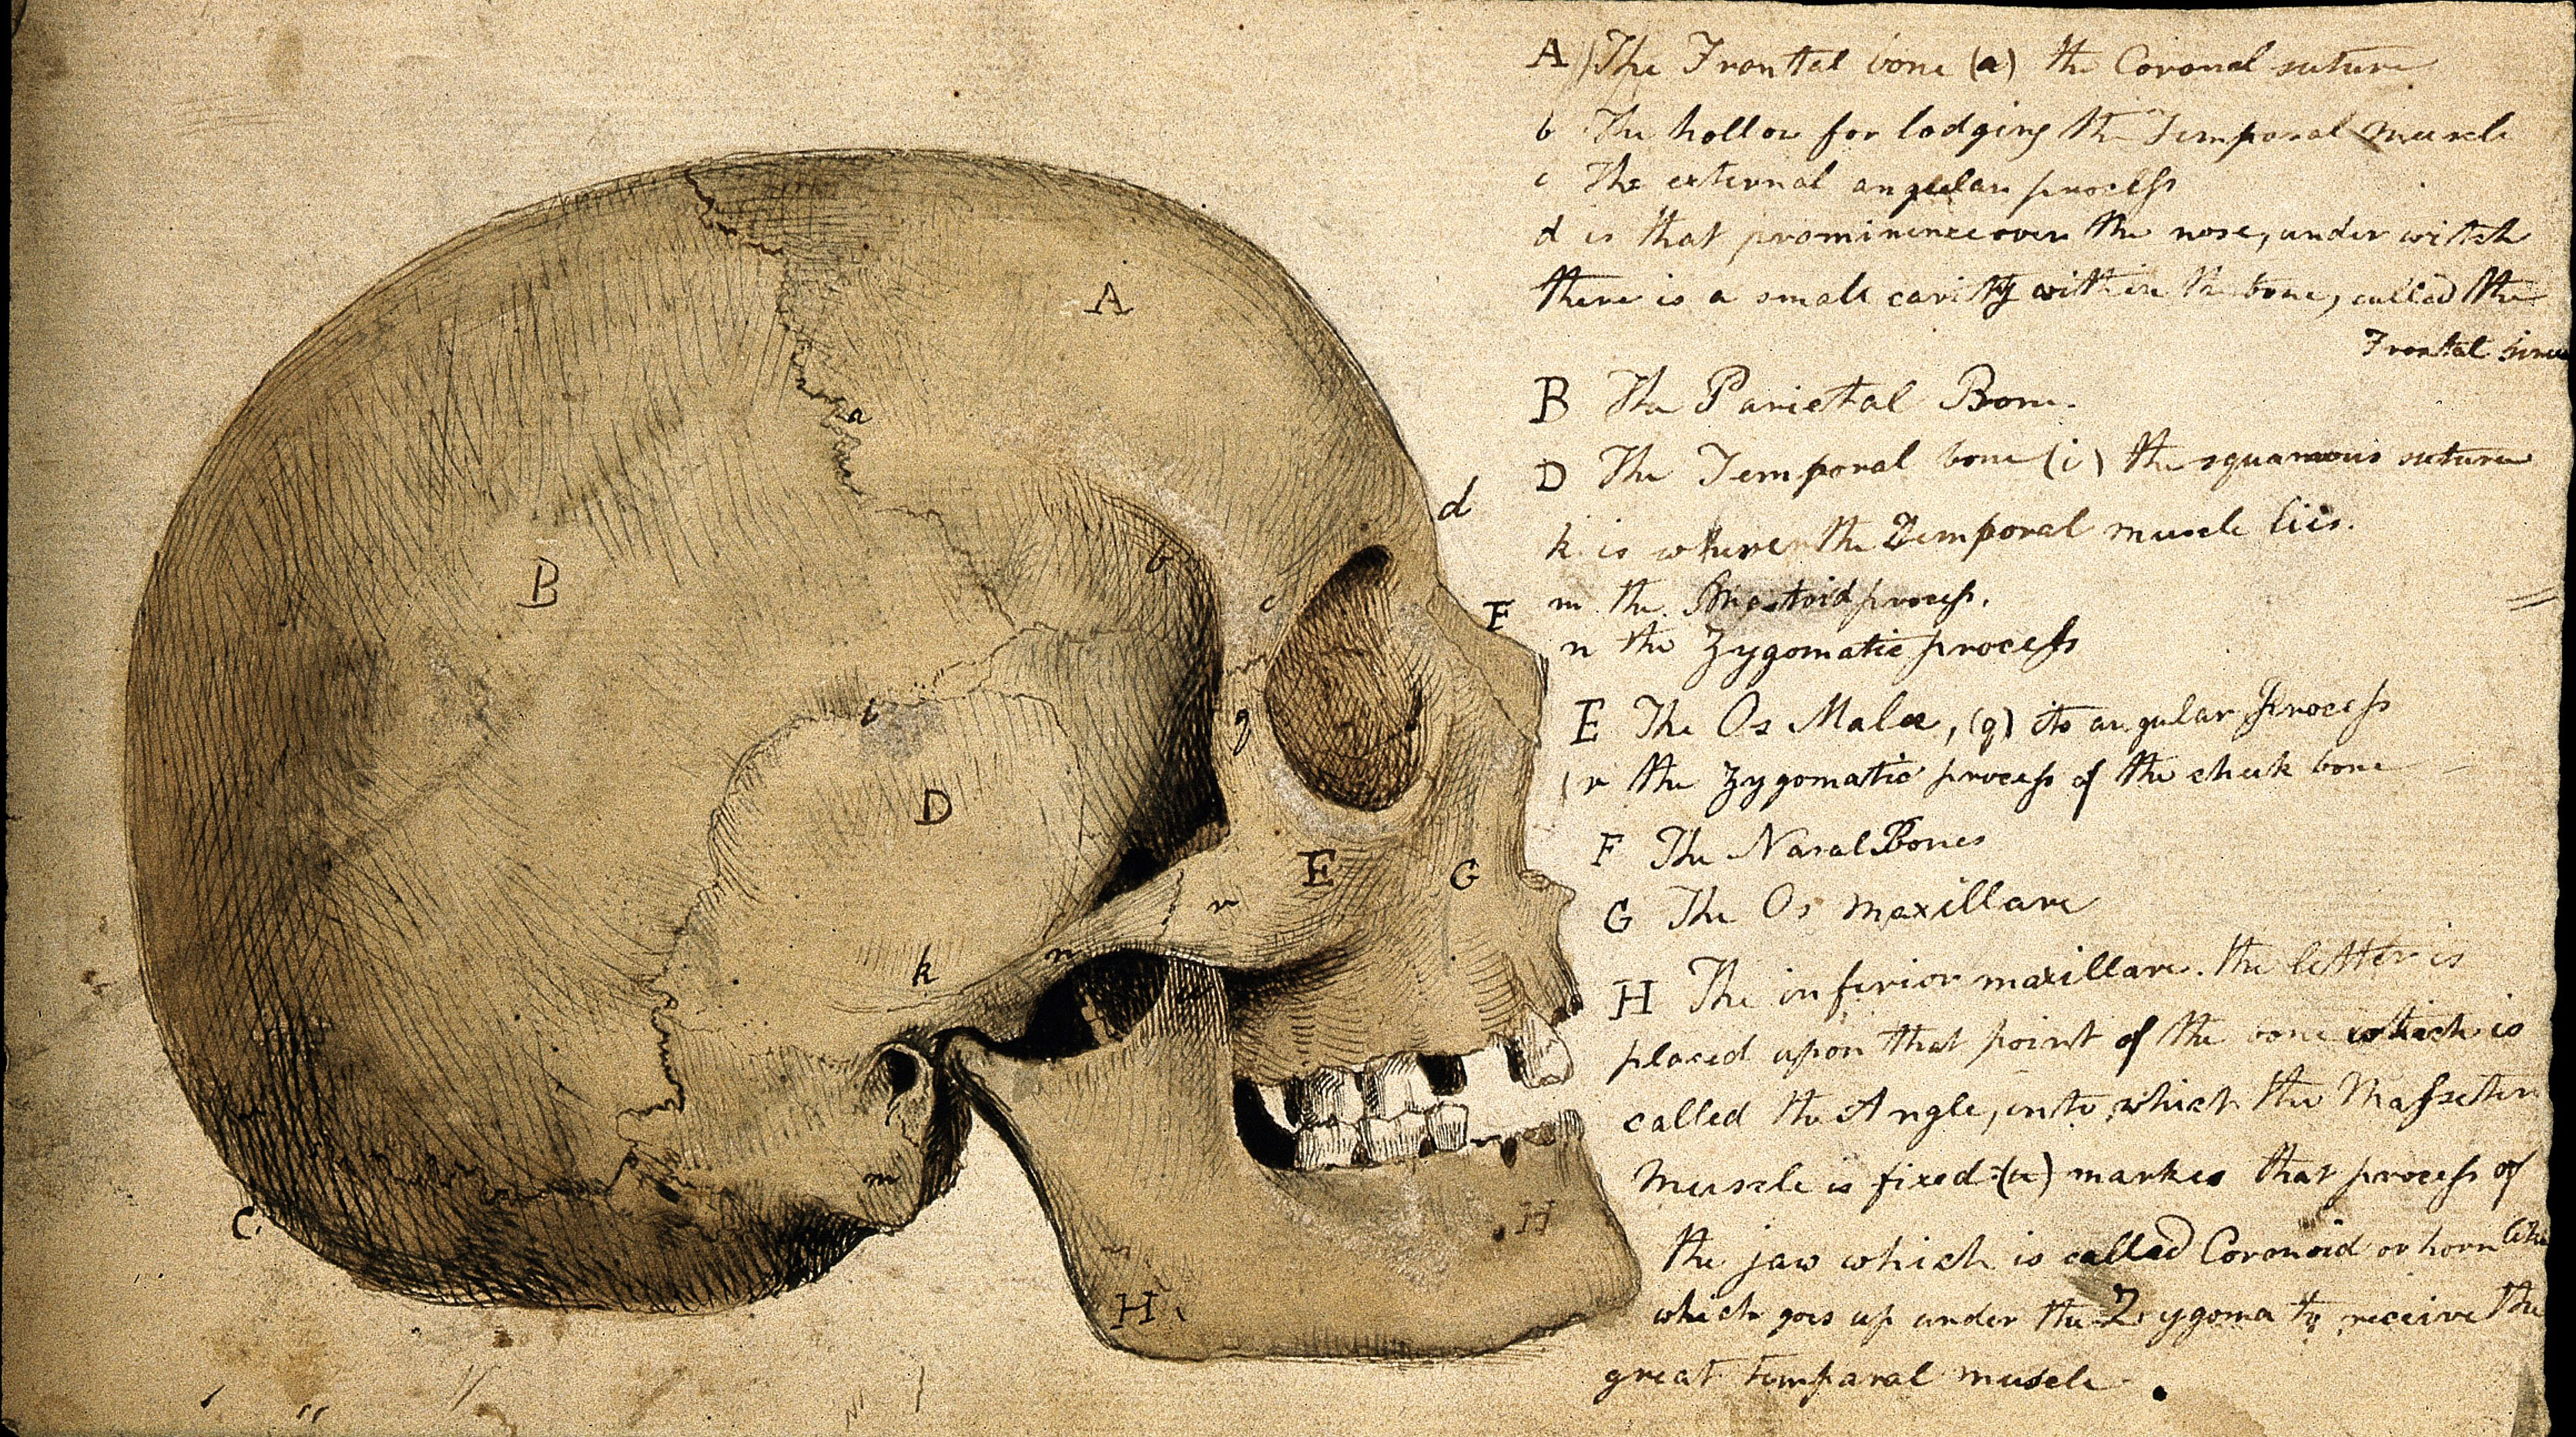 Fragmented Human Skull - Vintage Anatomy Print Drawing by Vintage